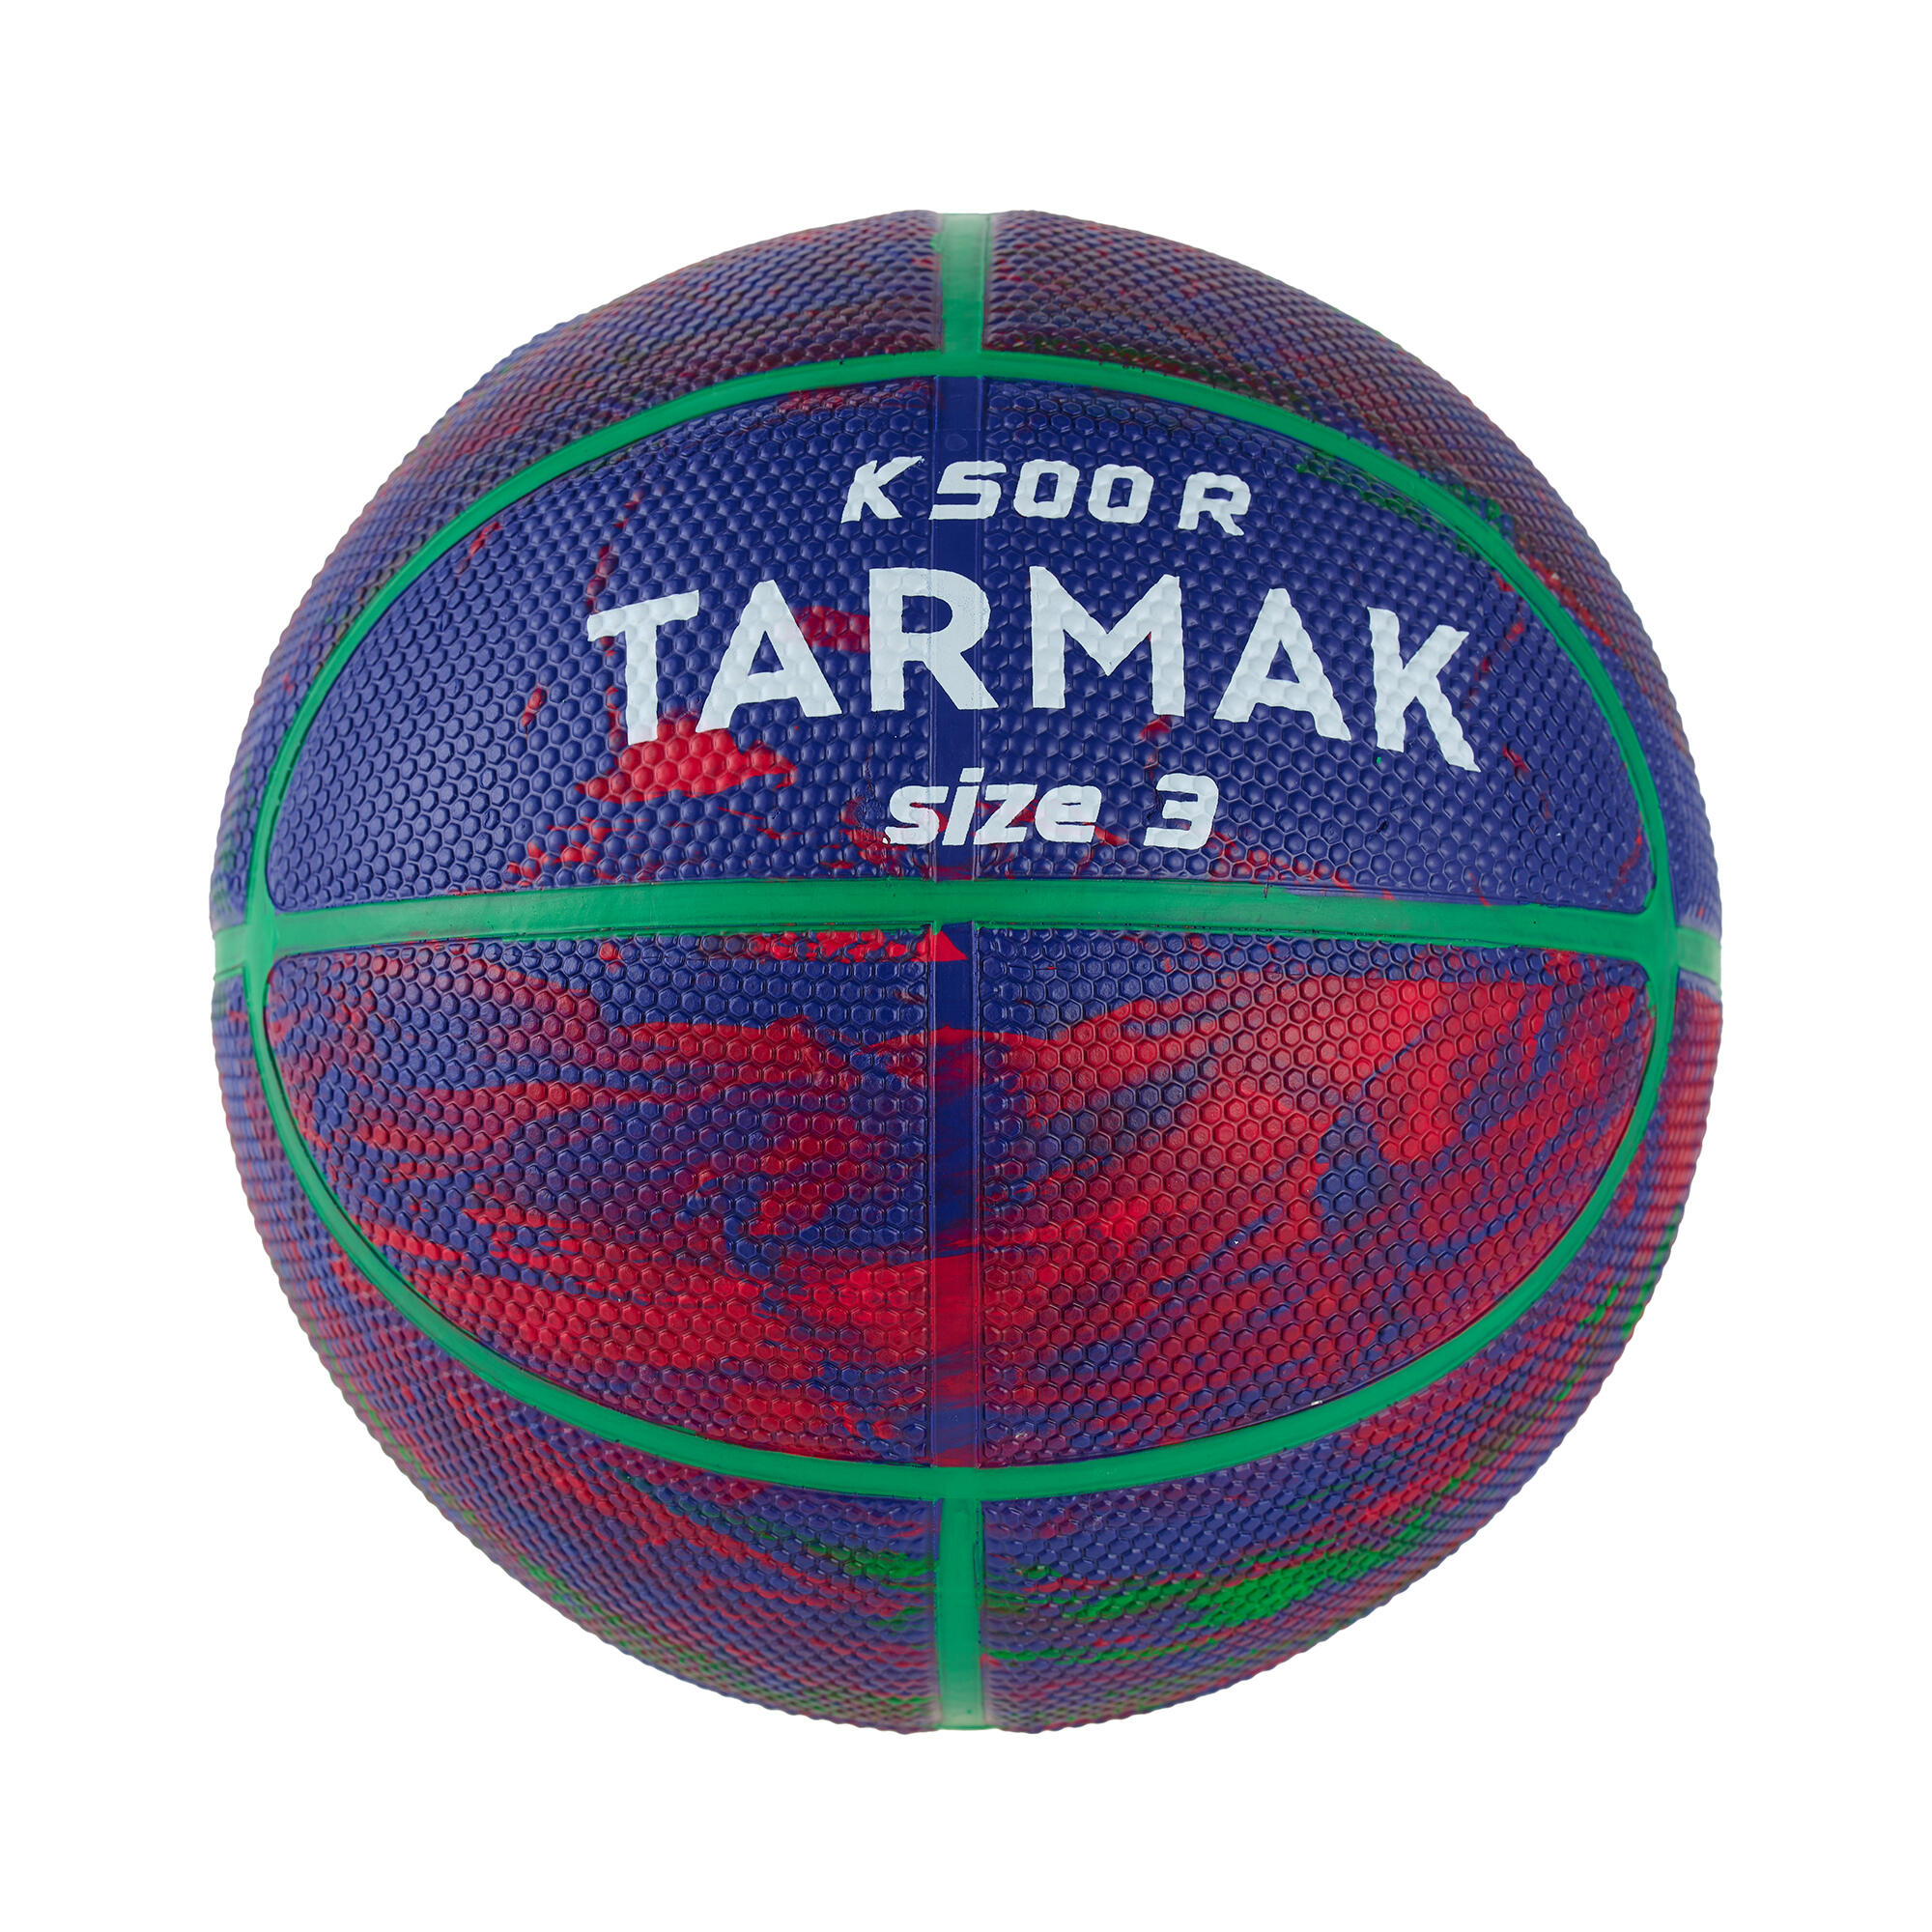 TARMAK Detská basketbalová lopta K500 veľkosť 3 modro-červená modrá 3